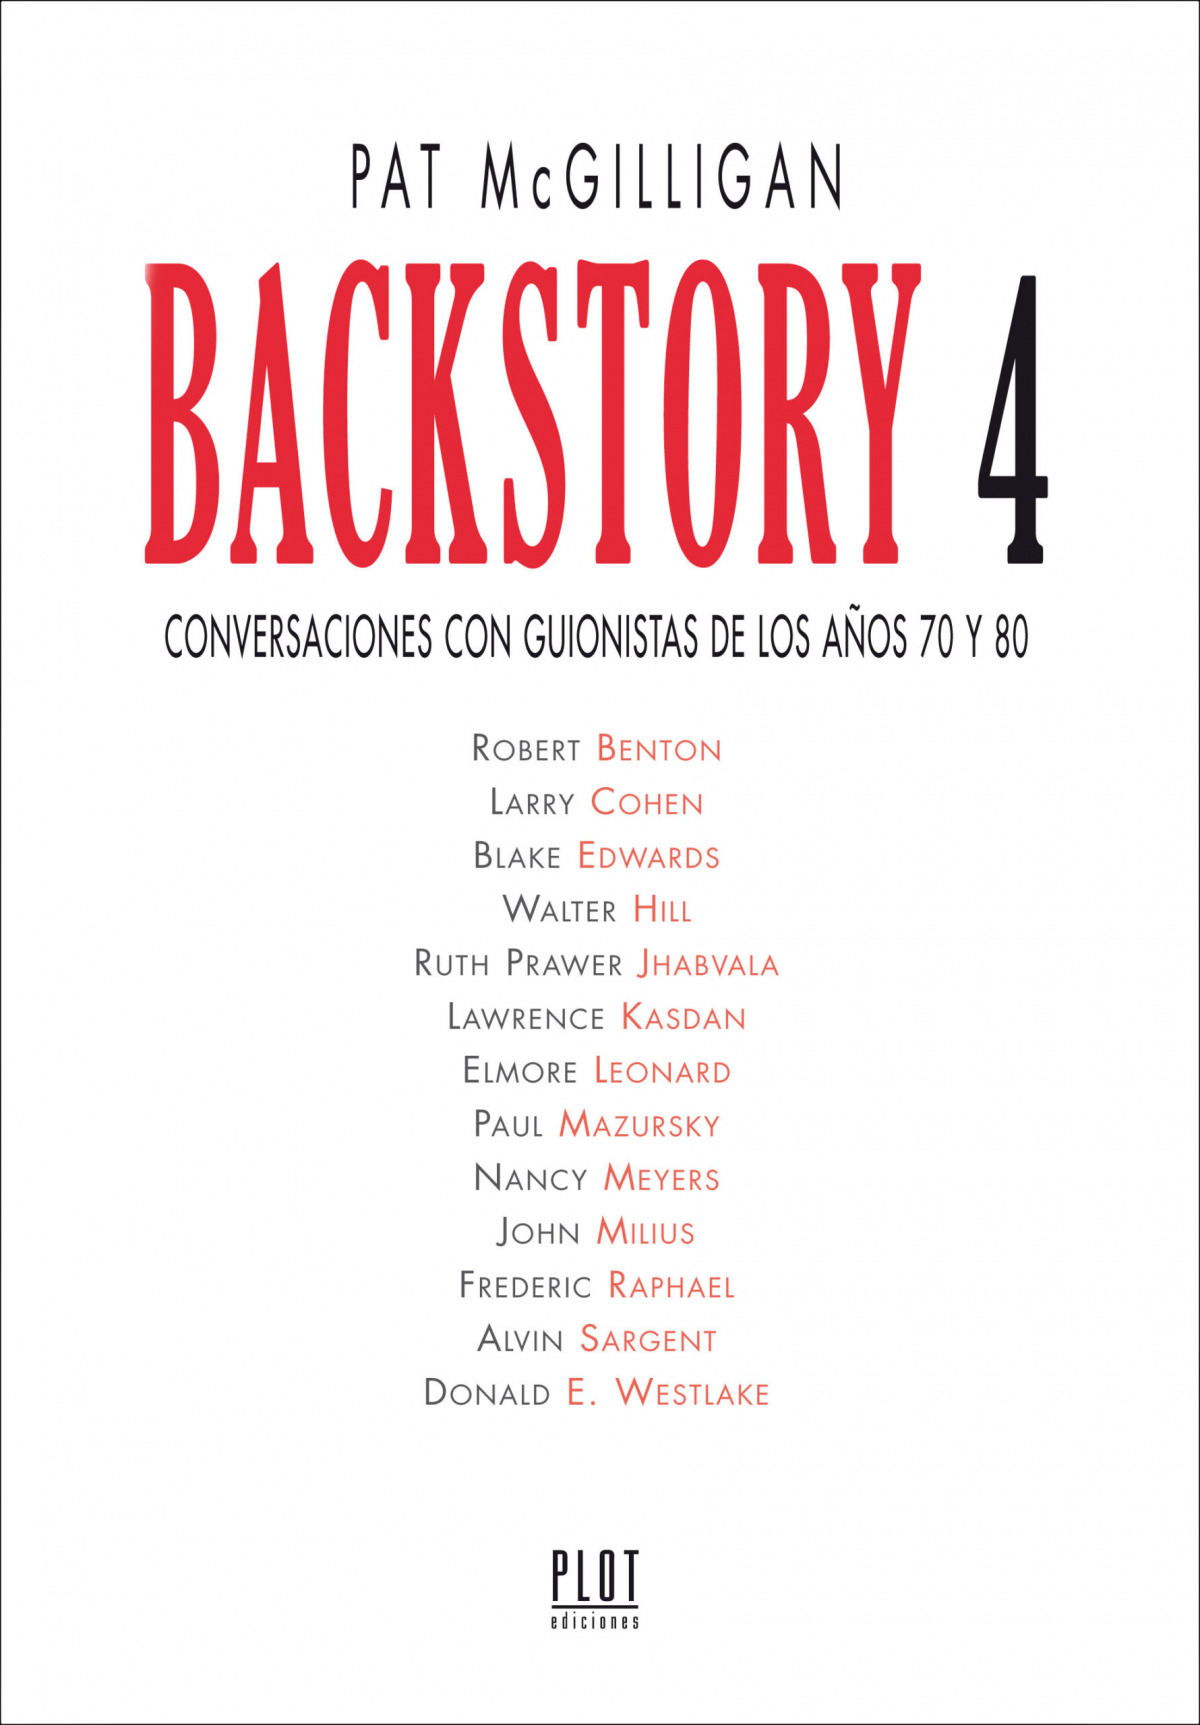 Backstory 4 CONVERSACIONES CON GUIONISTAS DE LOS AÑOS 70 Y 80 - McGilligan, Patrick